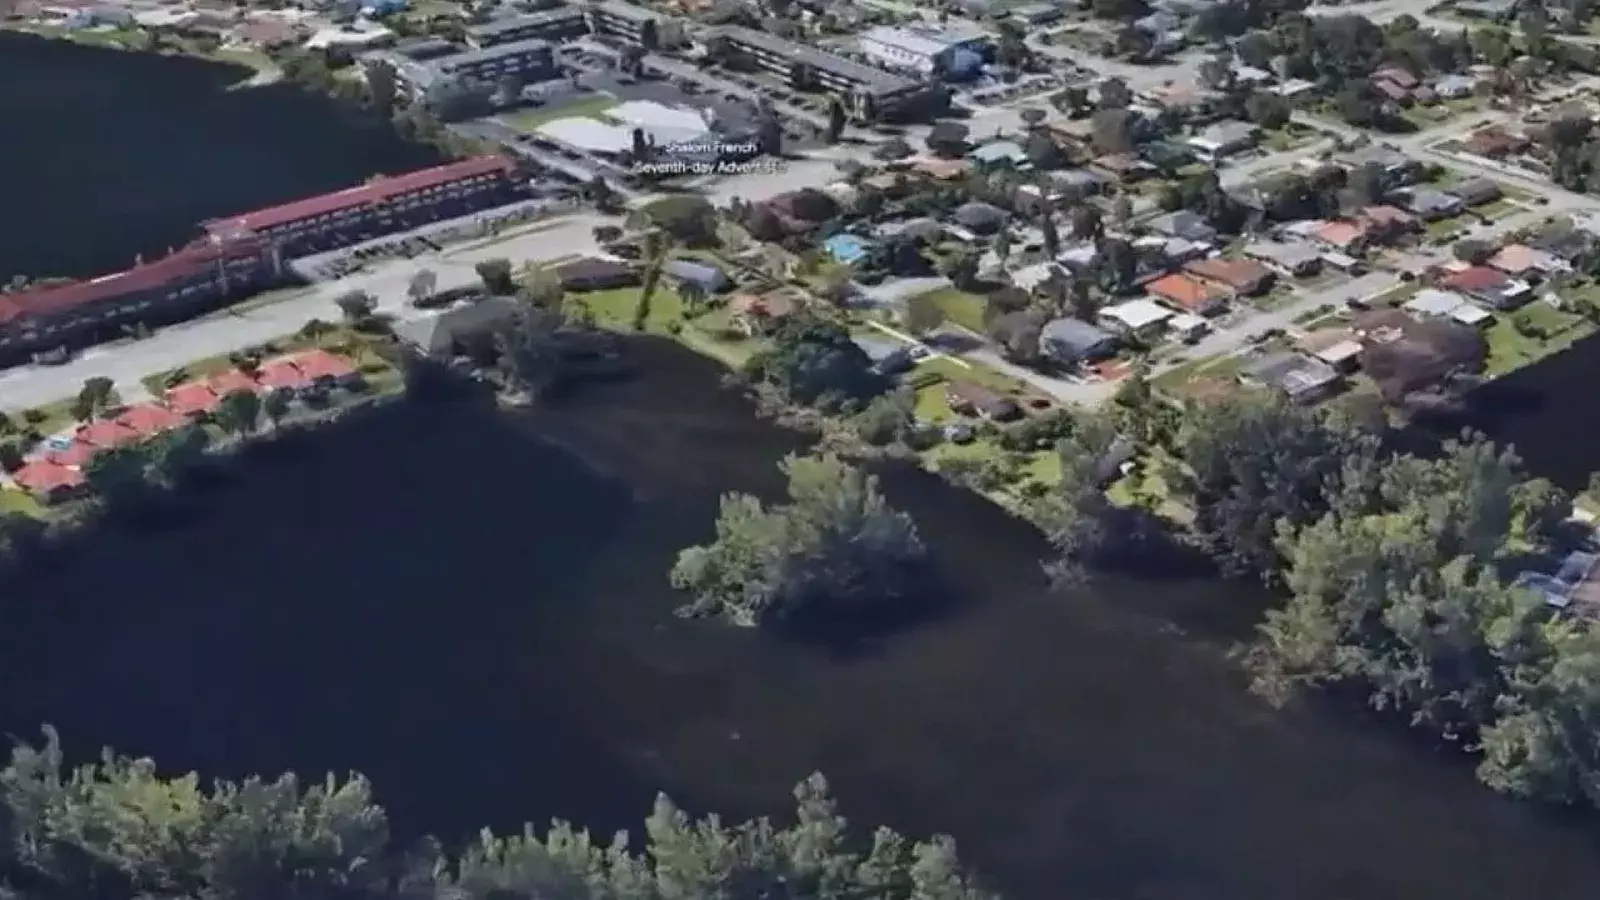 “Muerta en vida”: Hablan familiares y amigos de gemelos ahogados en lago de Miami